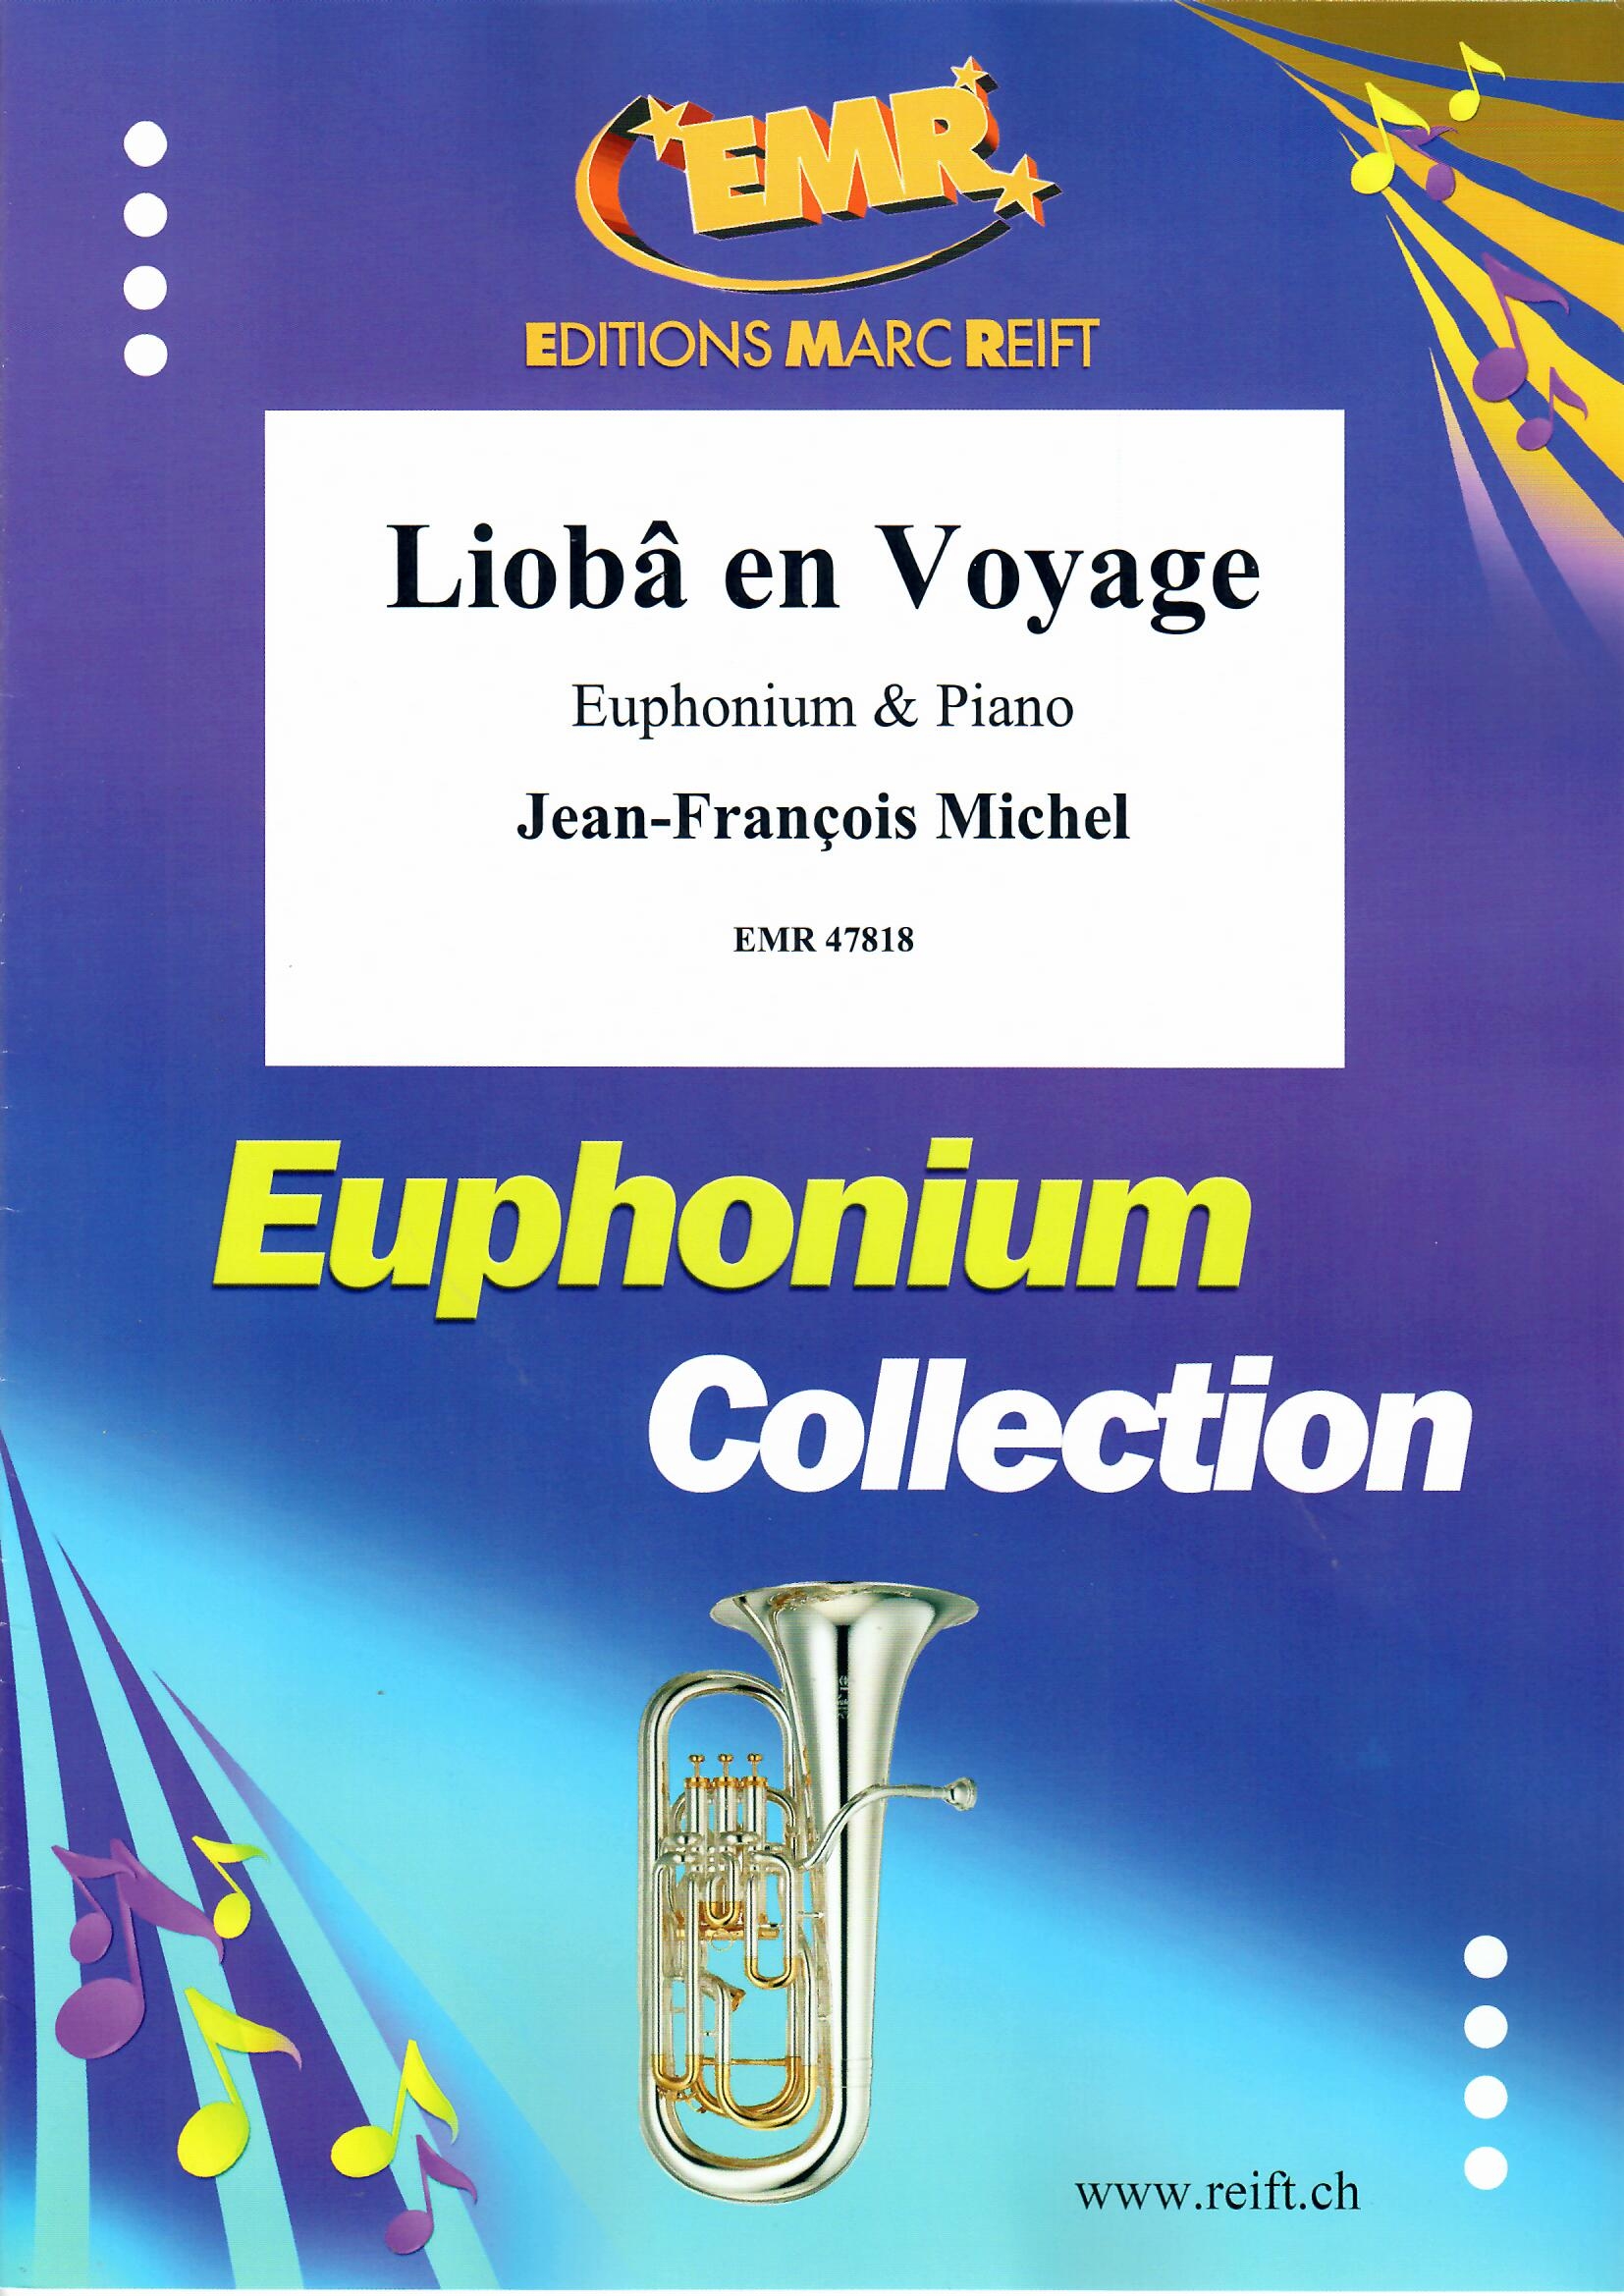 LIOBâ EN VOYAGE - Euphonium & Piano